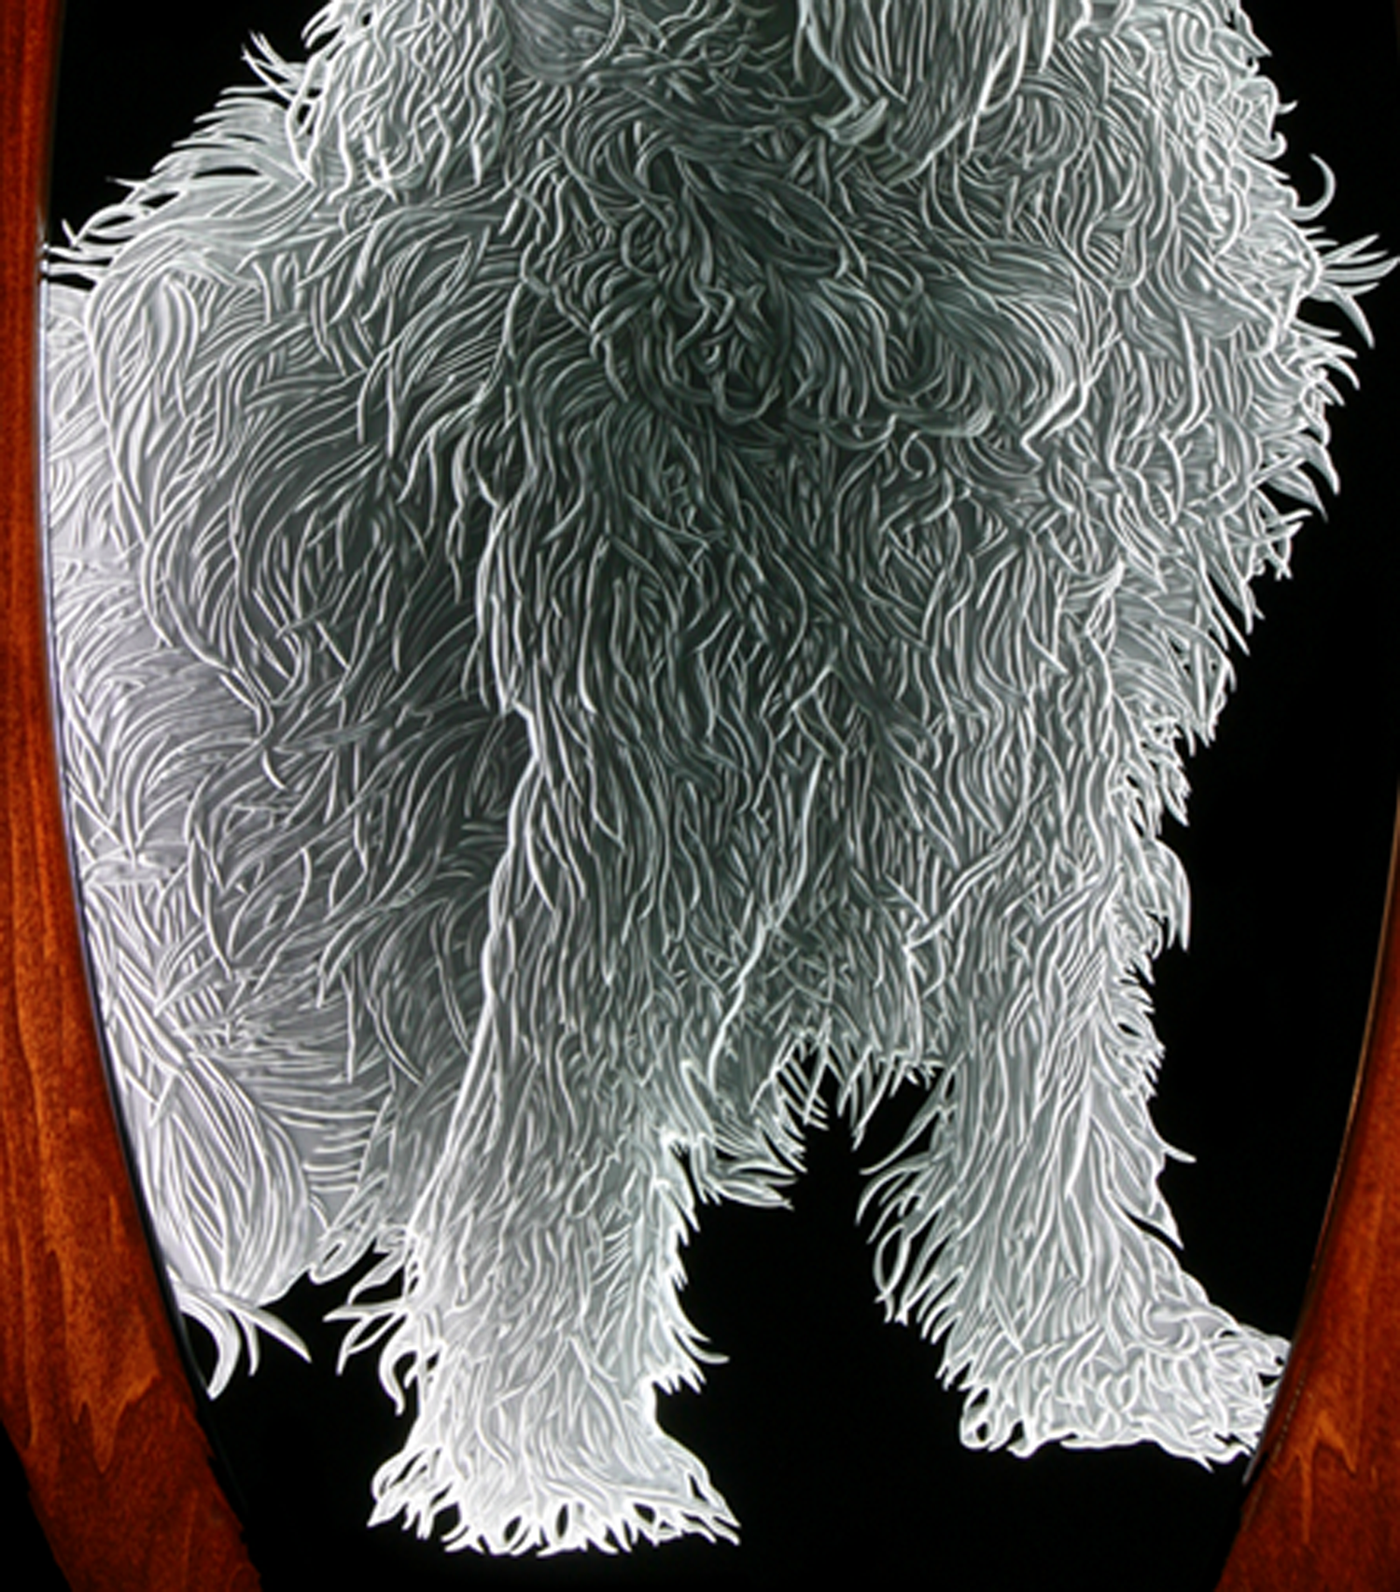 Boykin Spaniel Details Sand Carved Glass by Lex Melfi